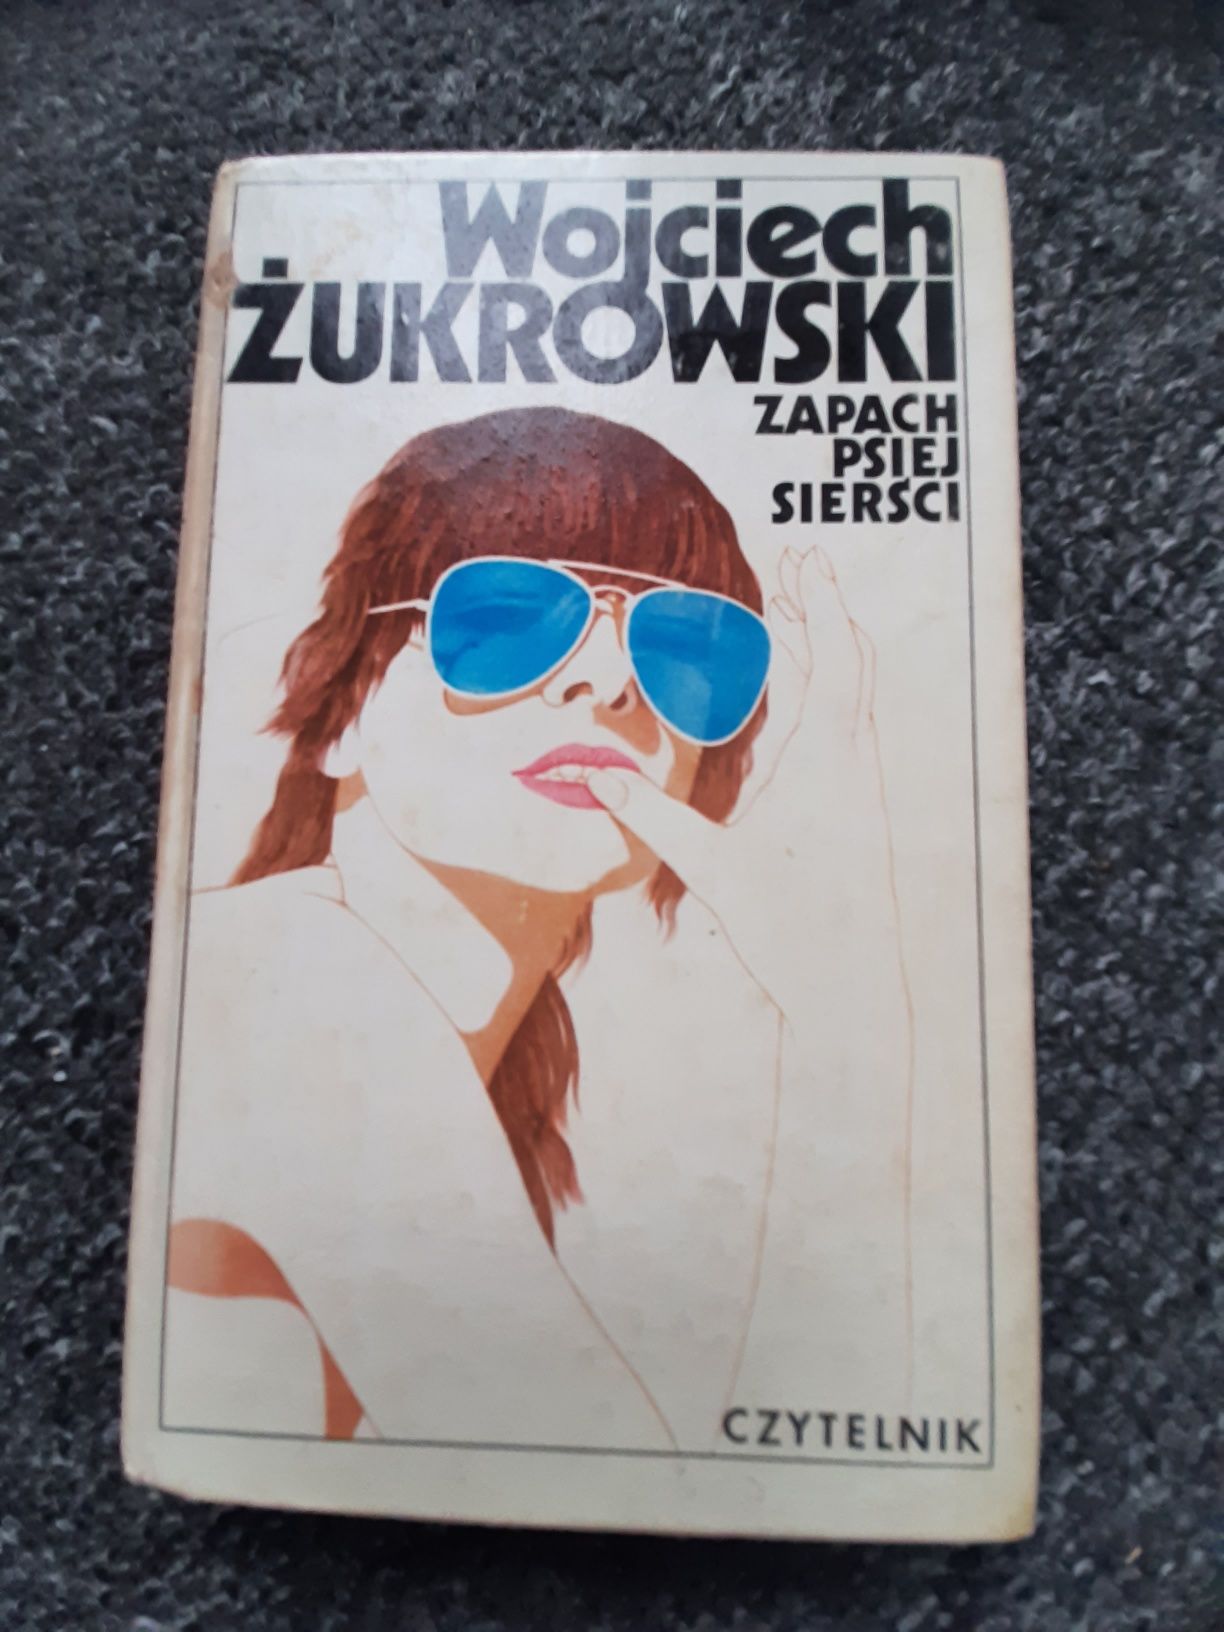 Wojciech Żurkowski zapach psiej sierści (GRDP4)